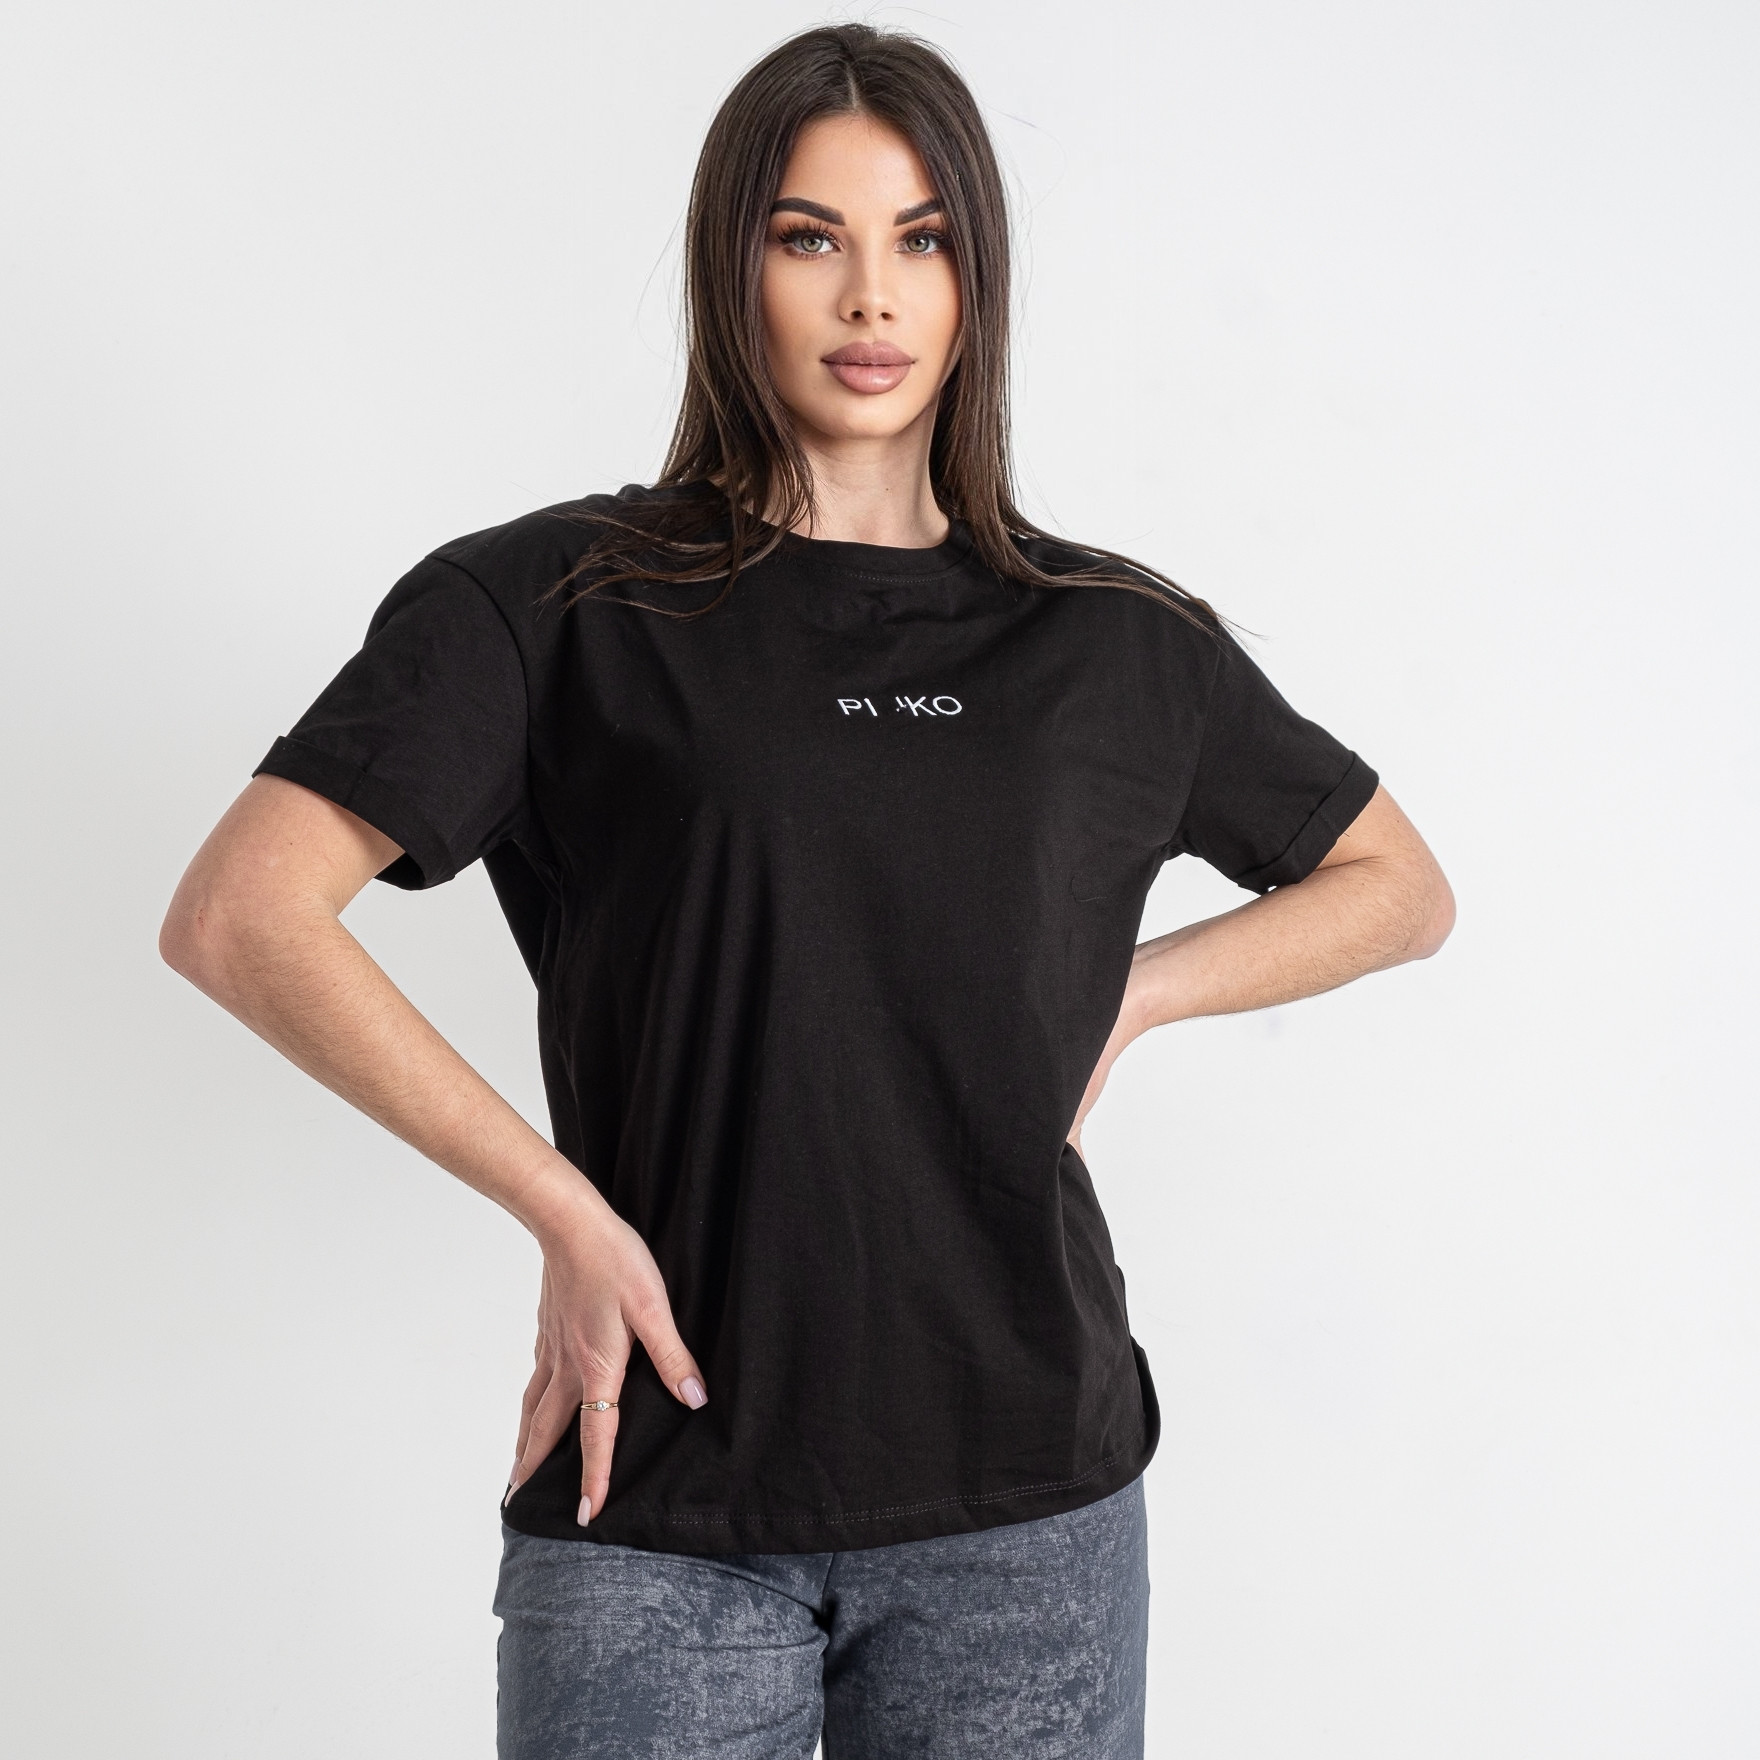 9630 размер М черная женская футболка с браком (смотрите фото) (MINIMAL)